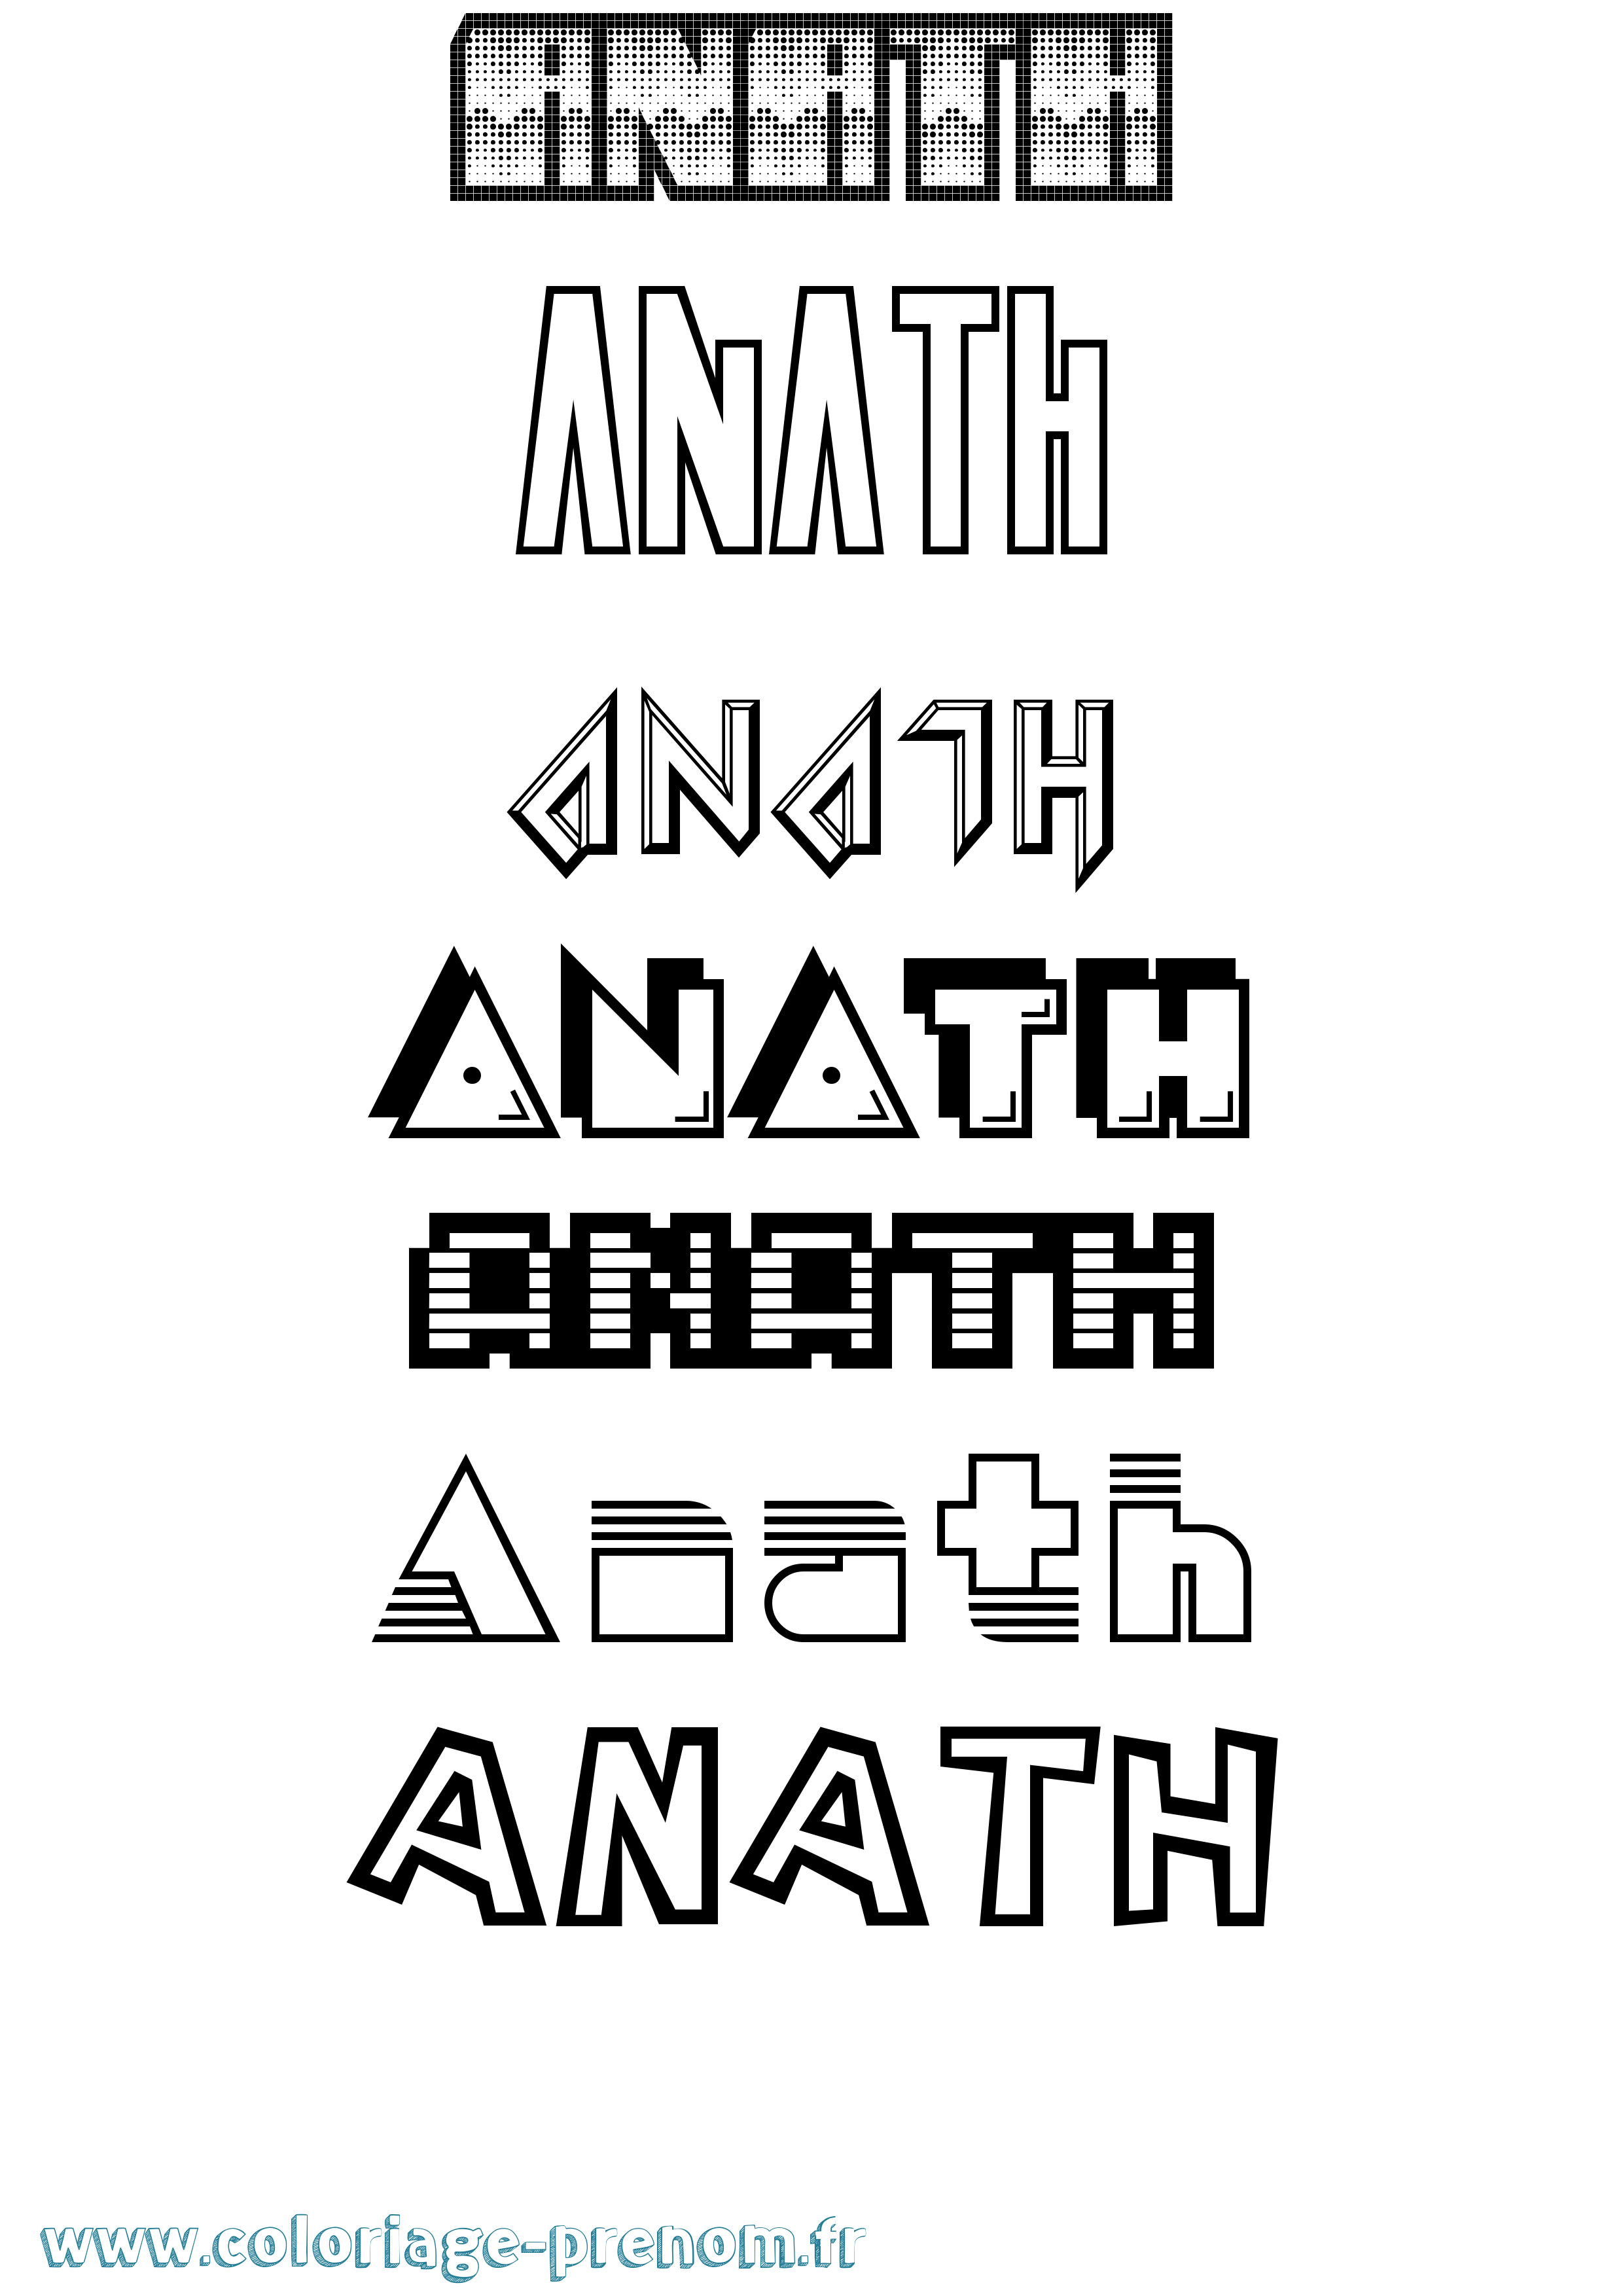 Coloriage prénom Anath Jeux Vidéos